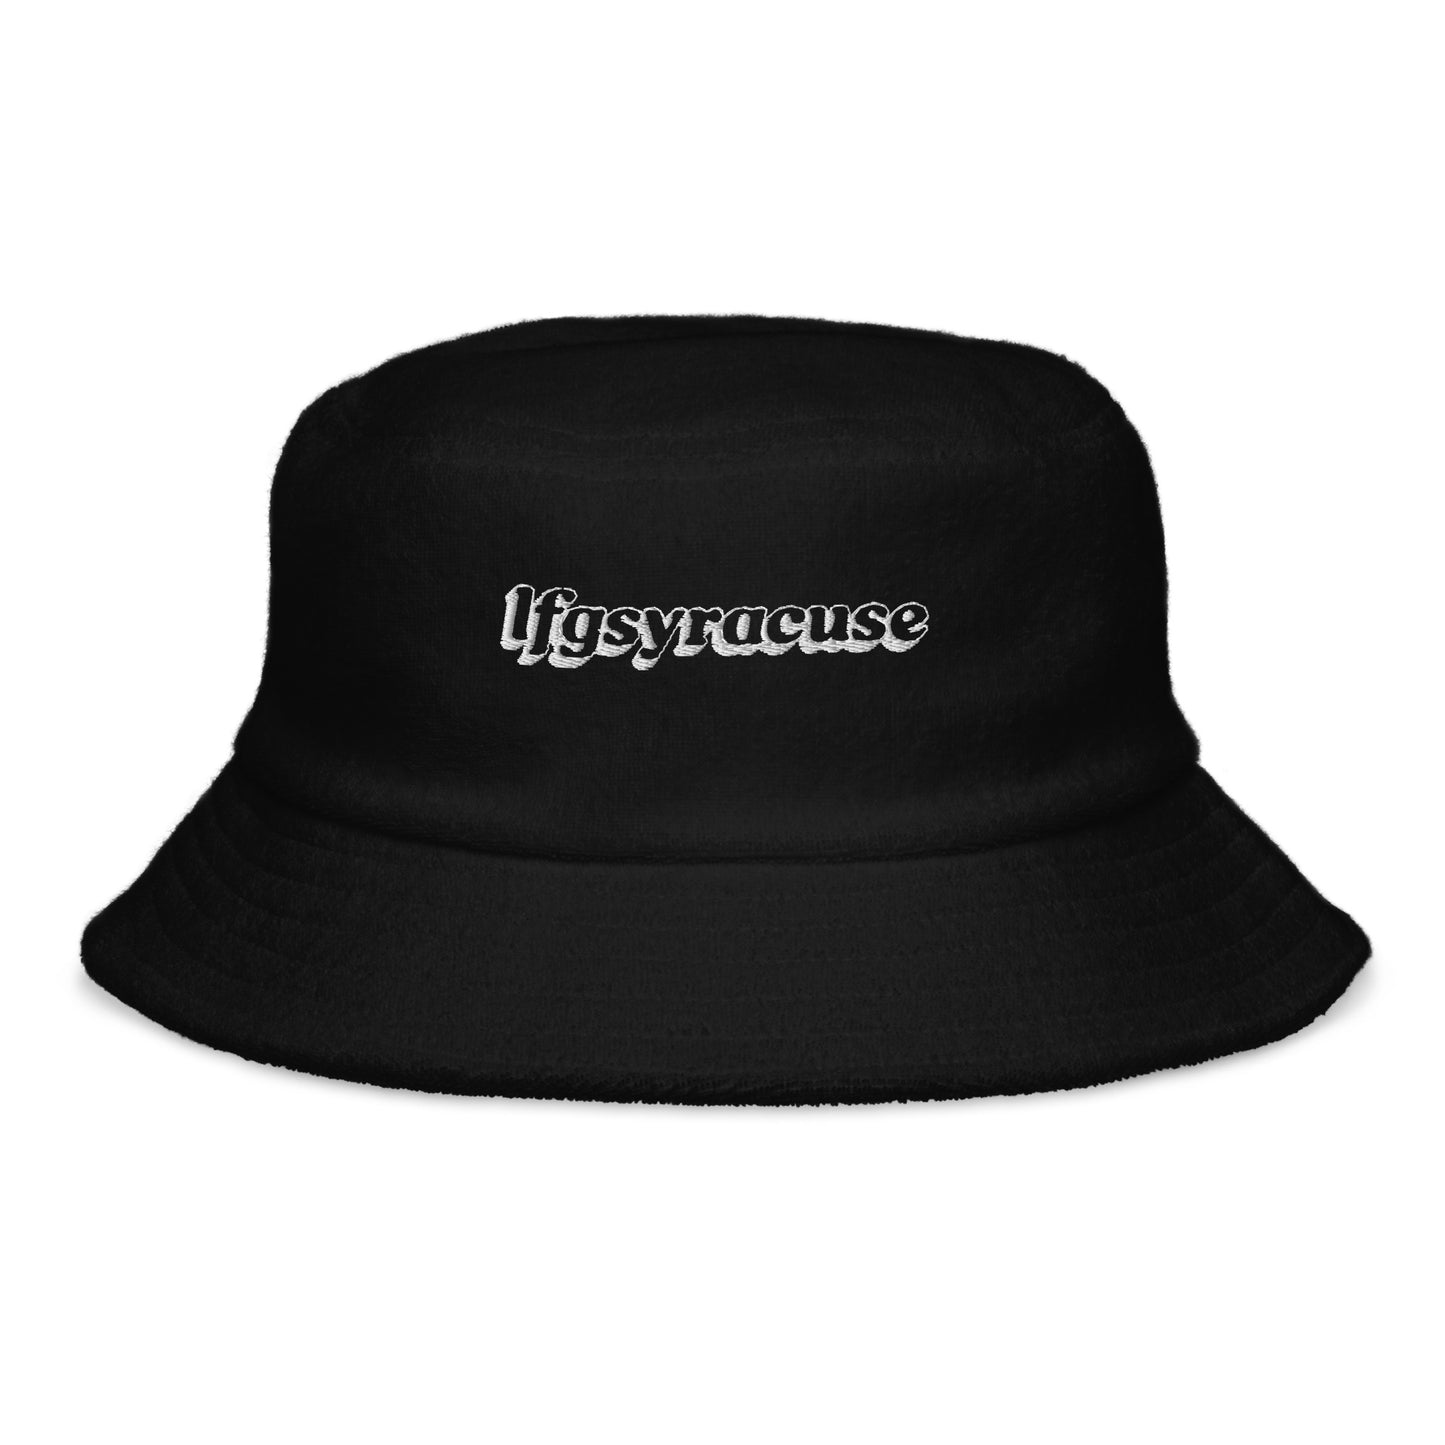 lfgsyracuse bucket hat